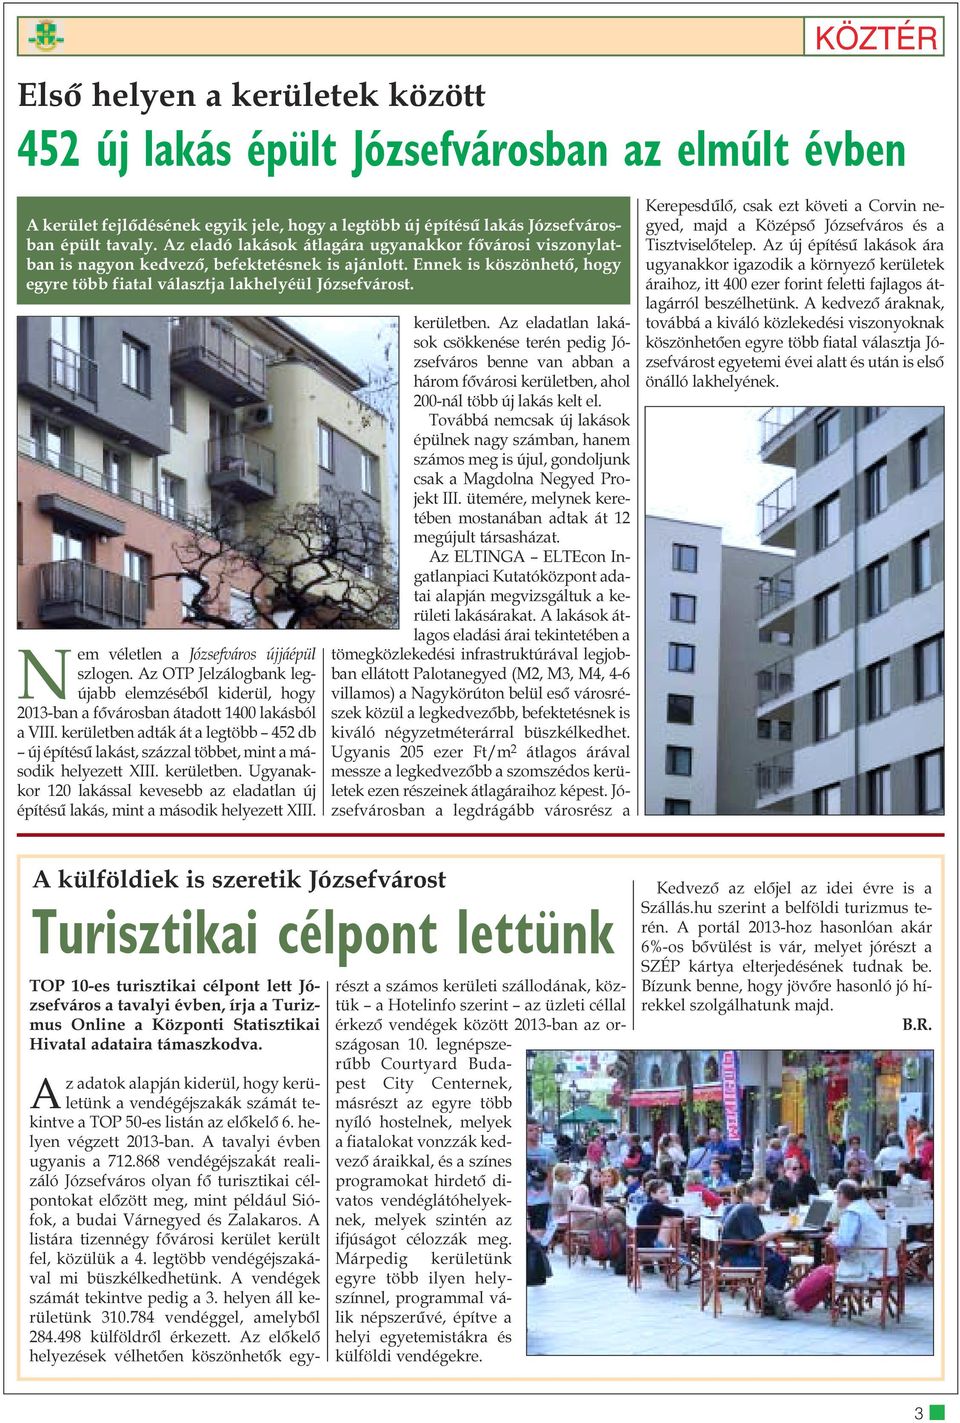 Nem véletlen a Józsefváros újjáépül szlogen. Az OTP Jelzálogbank legújabb elemzésébõl kiderül, hogy 2013-ban a fõvárosban átadott 1400 lakásból a VIII.